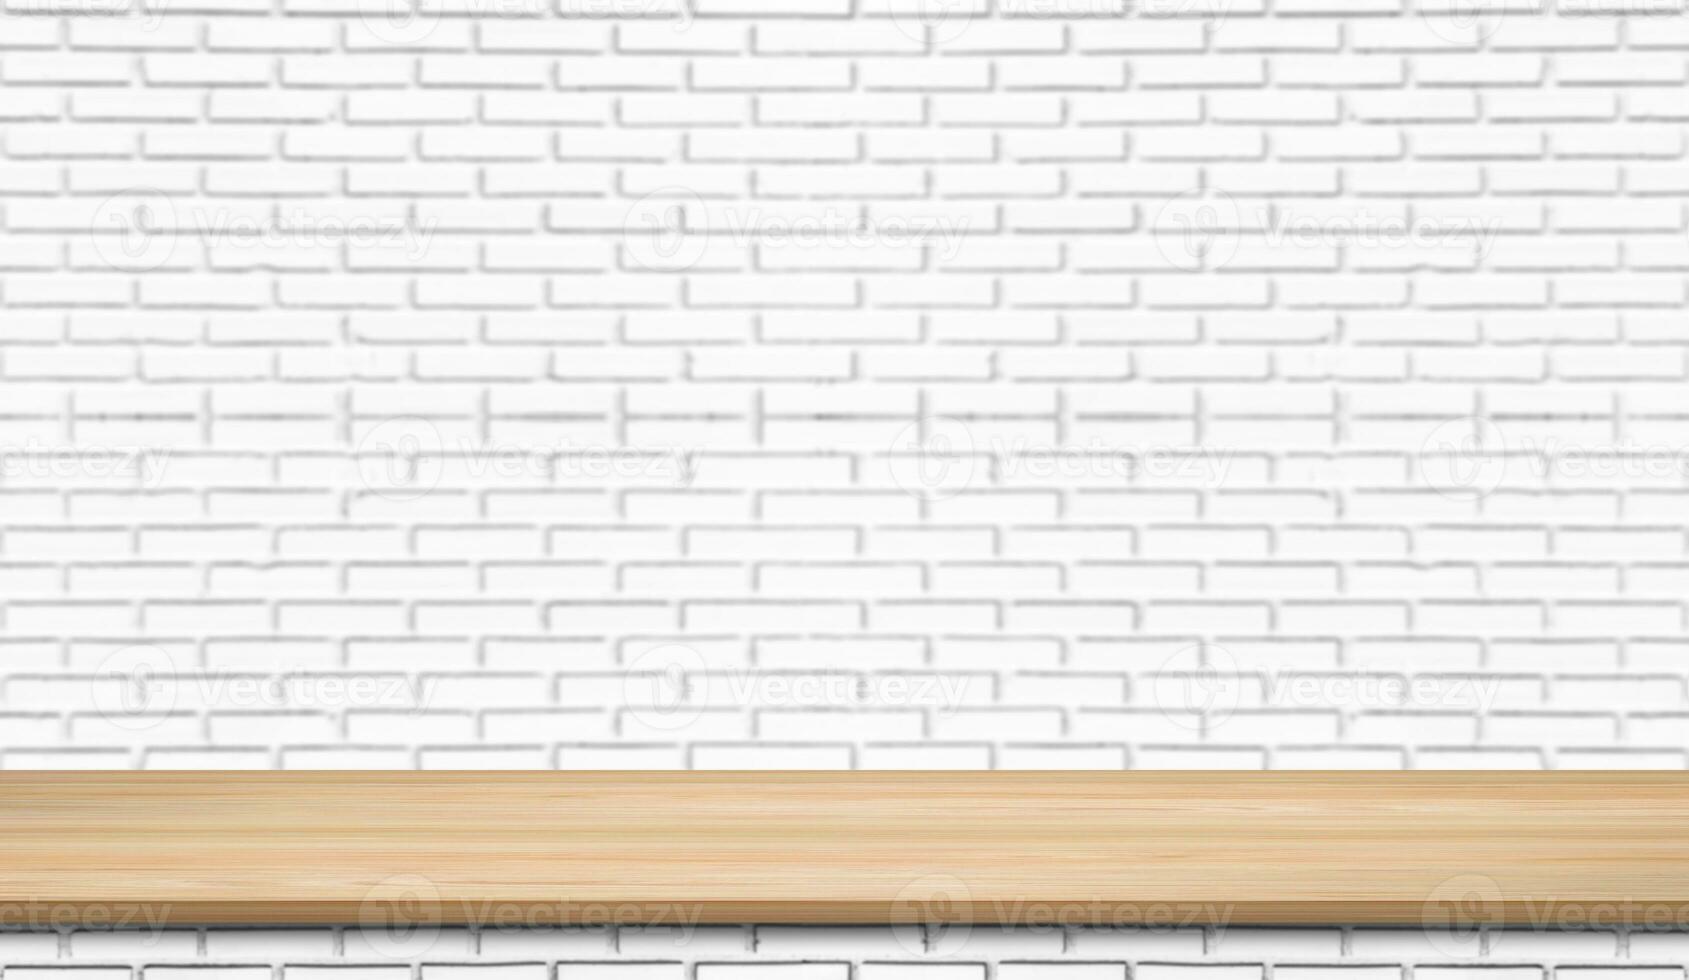 prateleira de prancha de madeira vazia no fundo do padrão de parede de tijolo branco. design para exibição de produto, maquete, propaganda, banner ou montagem foto